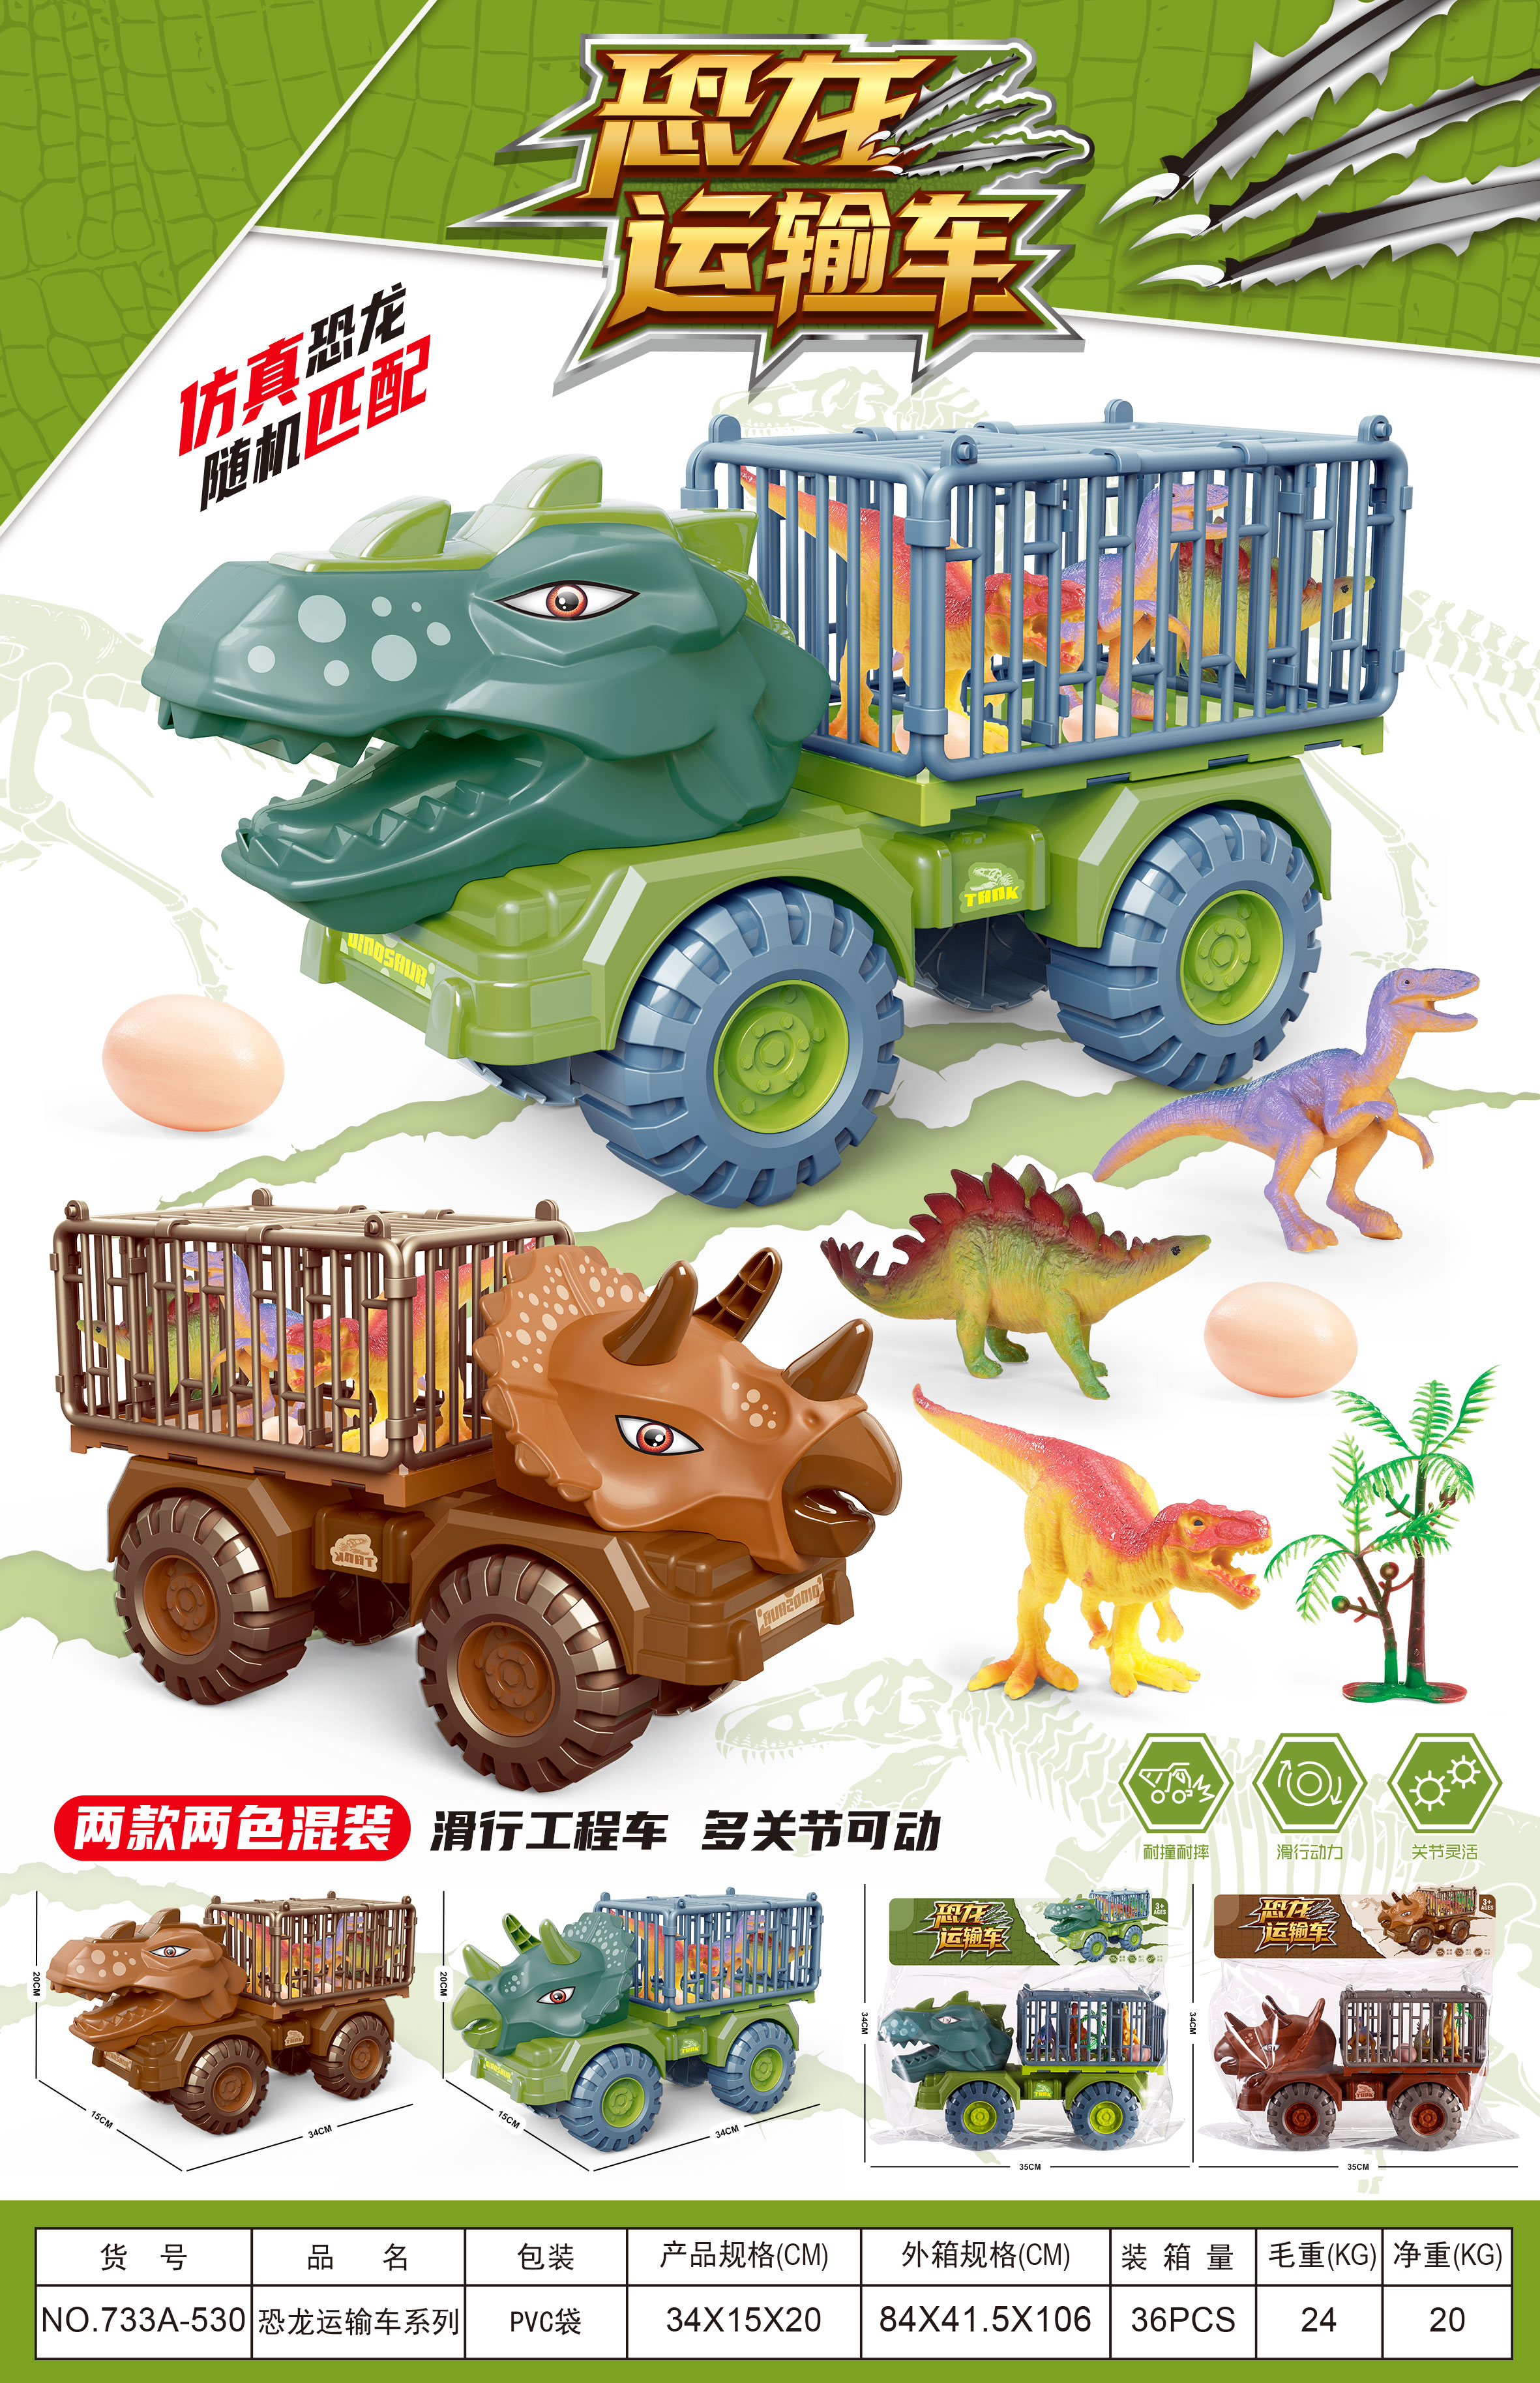 新款恐龙玩具车线上爆款义乌黄荣仁塑料玩具2022年线上爆款1052图